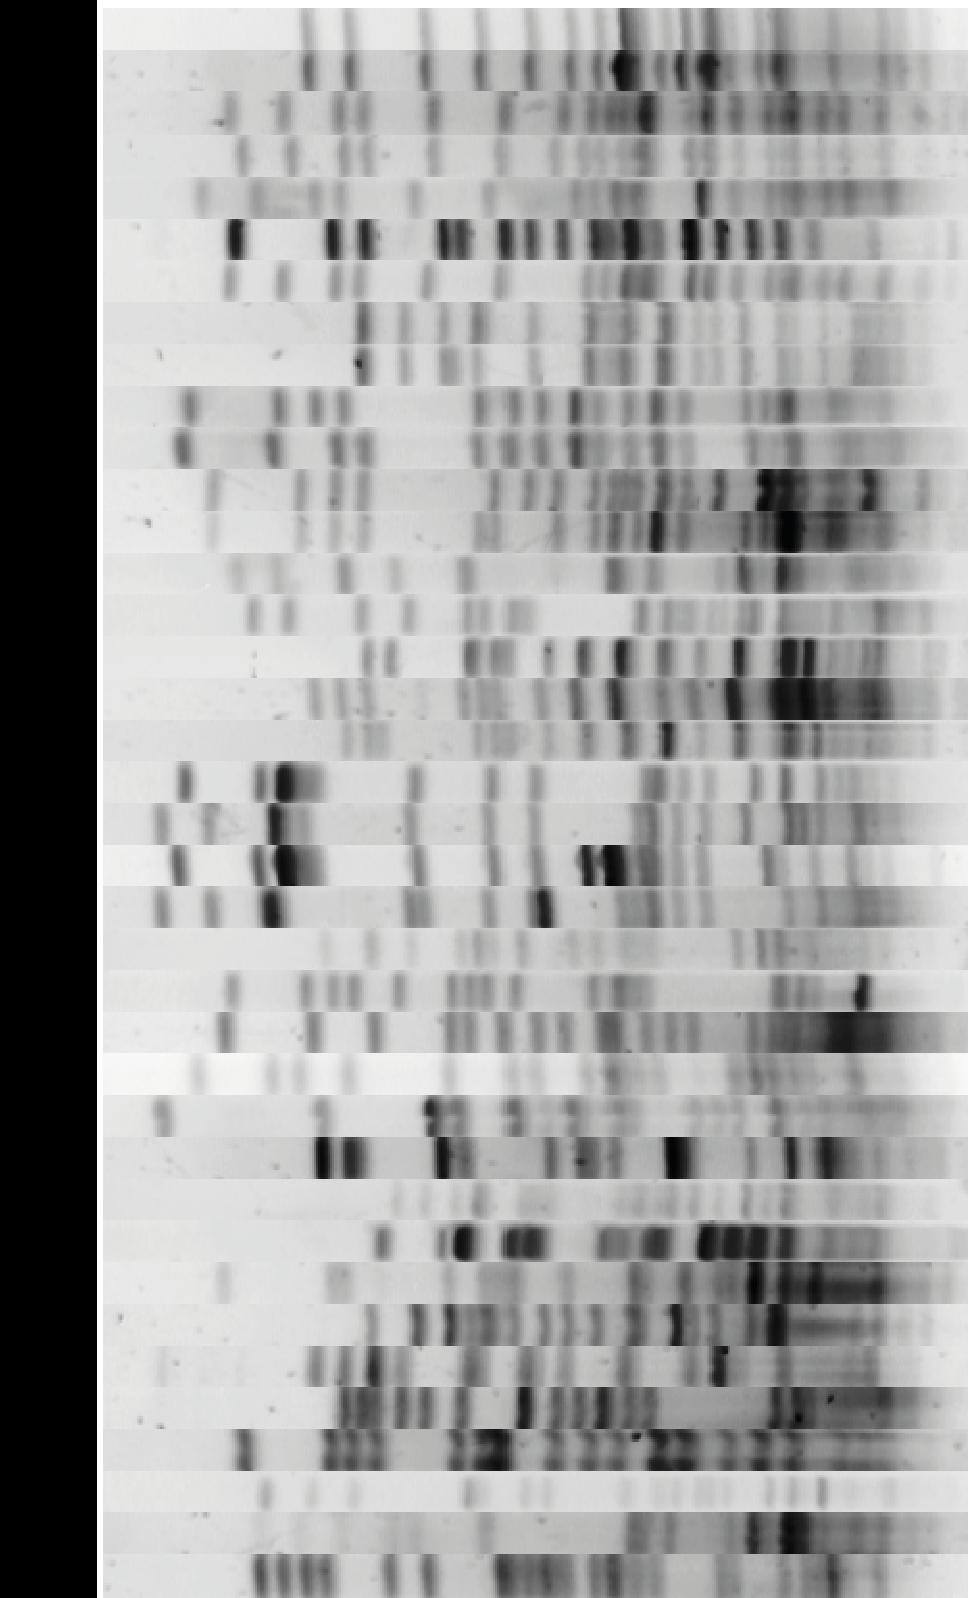 Slika 18. Prikaz svih makrorestrikcijskih profila izolata E.